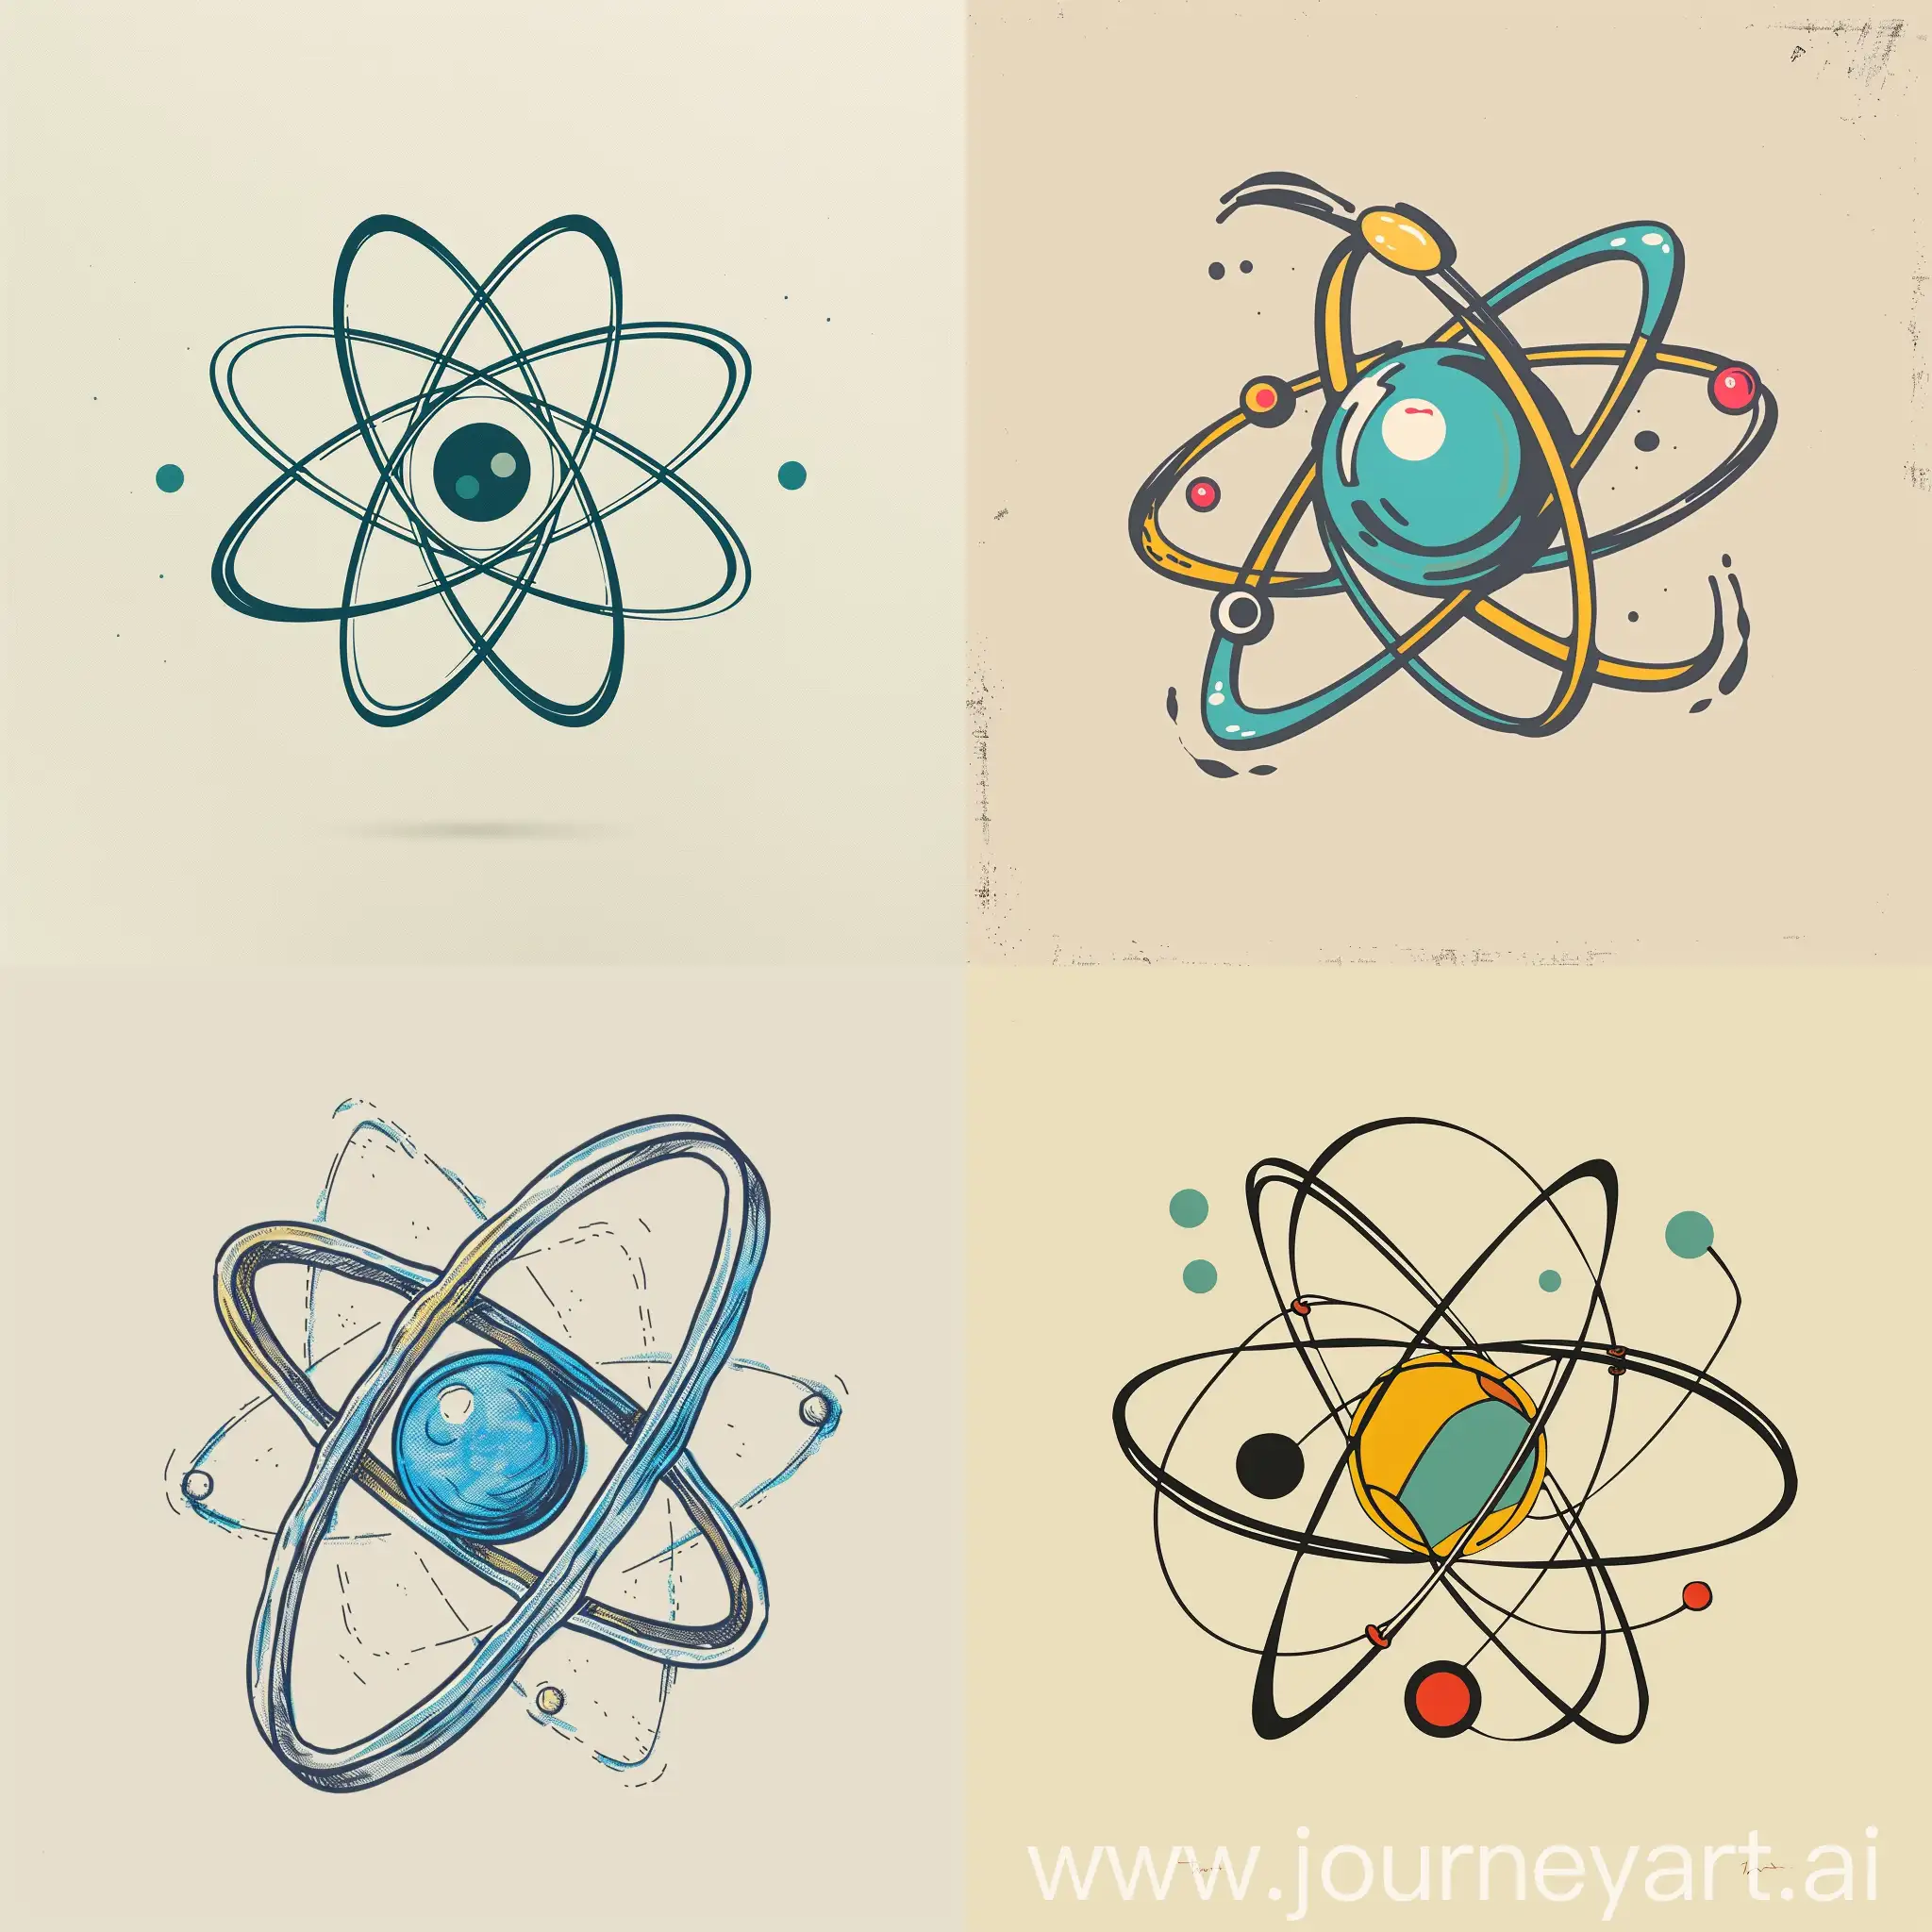 рисунок атома в графическом стиле